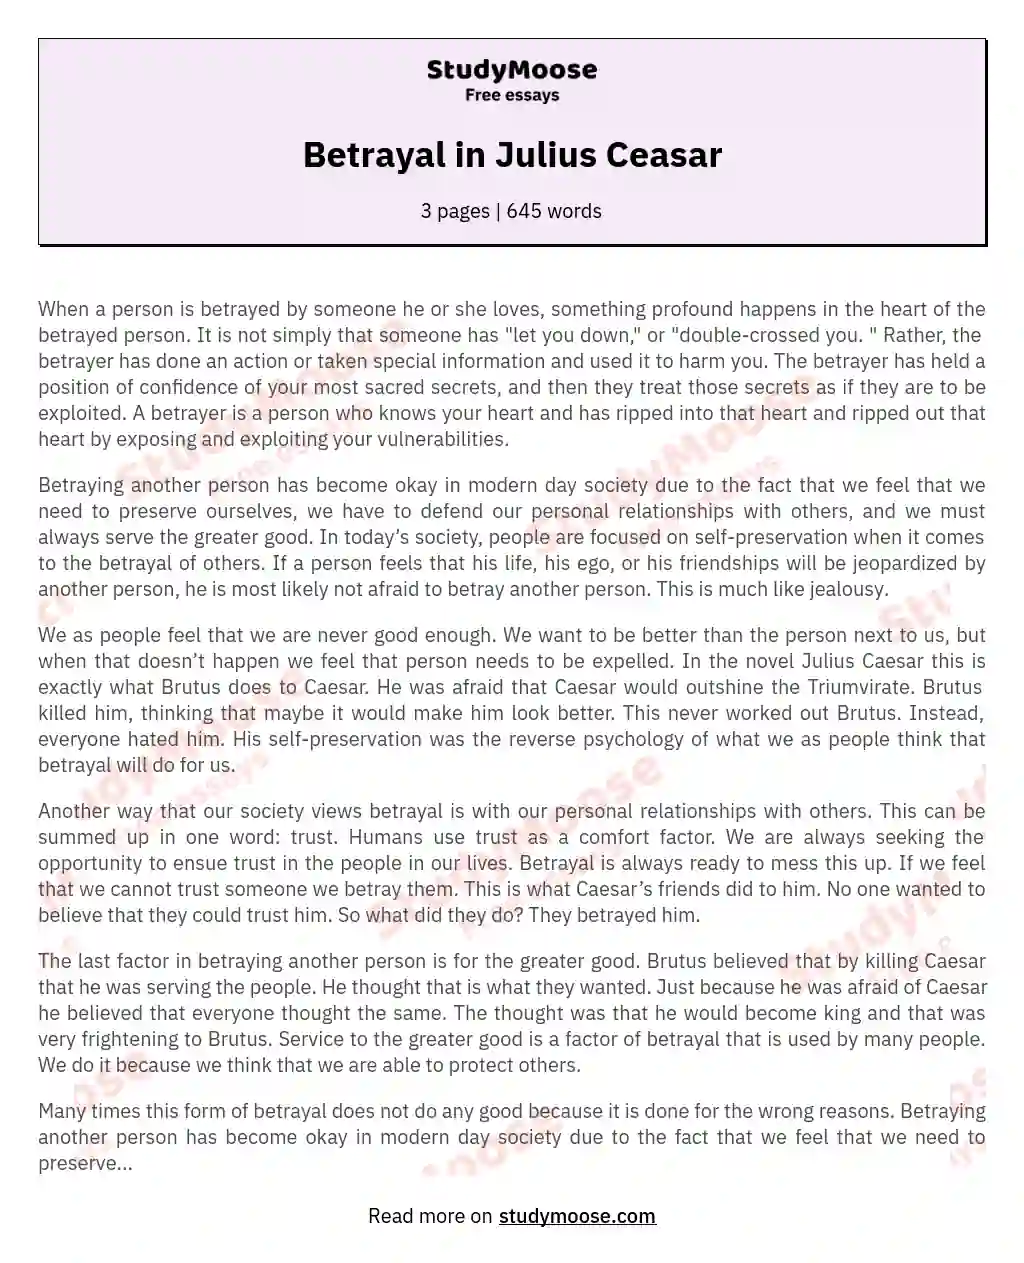 Betrayal in Julius Ceasar essay